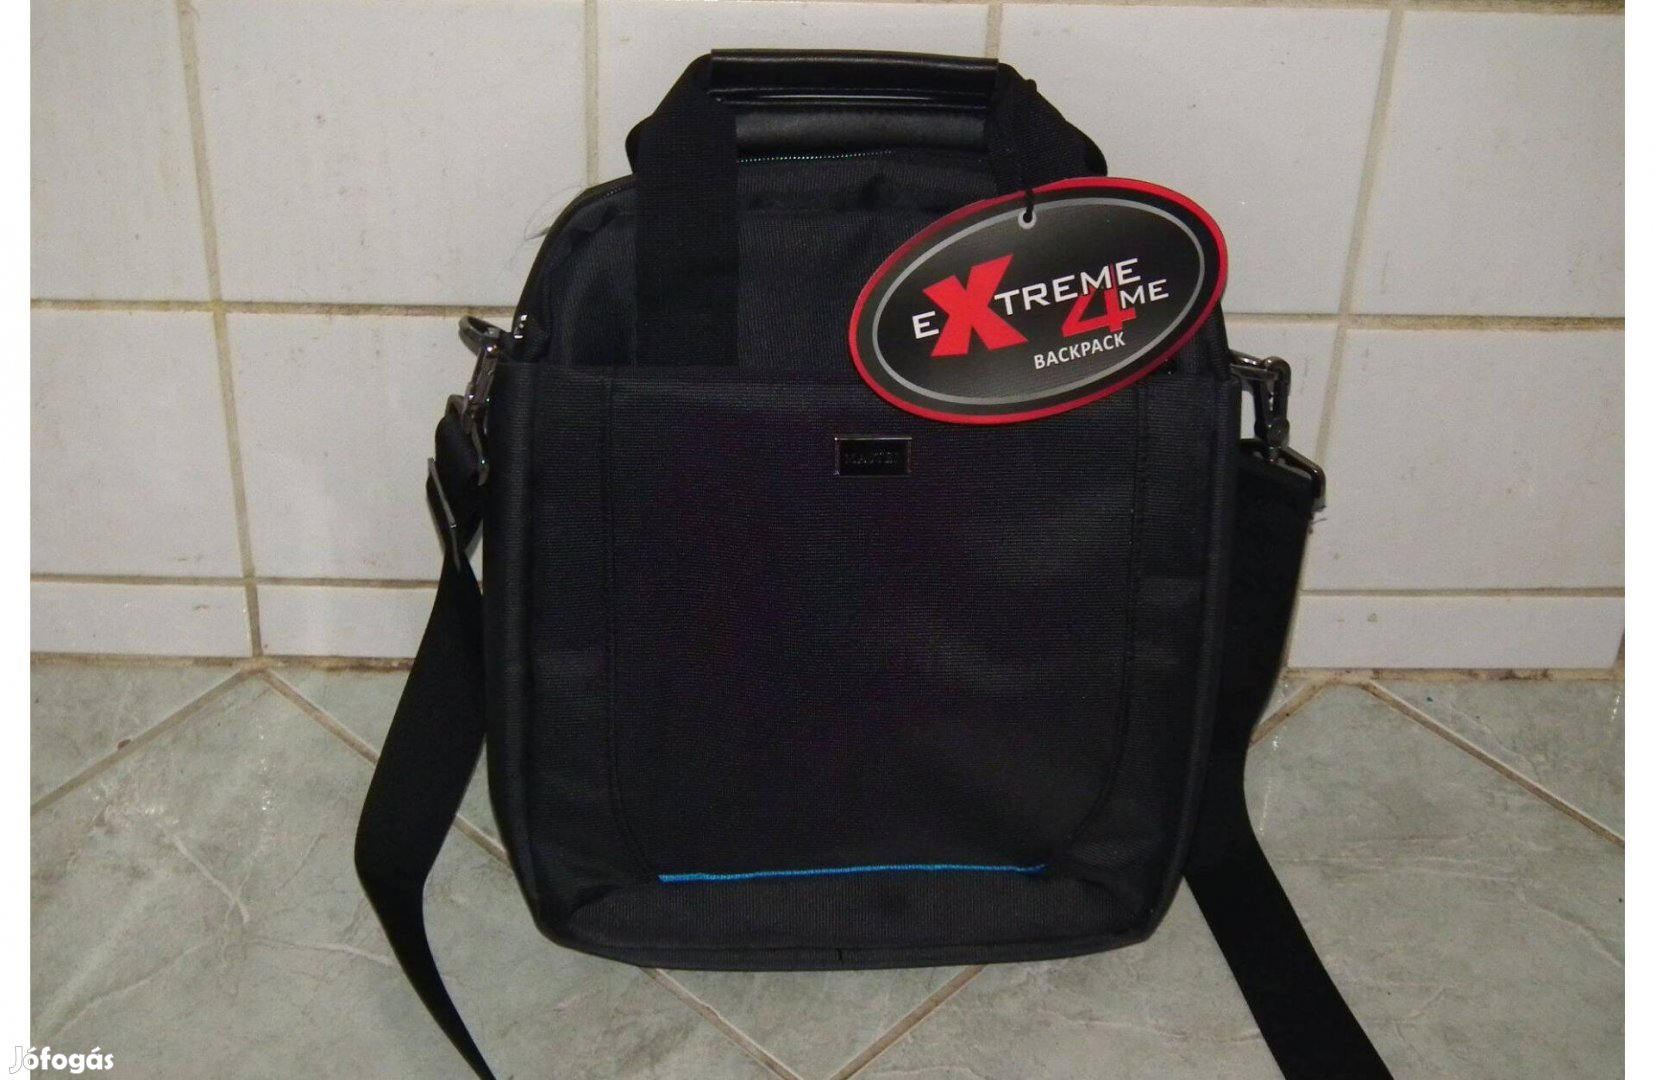 Férfi új, címkés, Extreme4me Master válltáska táska